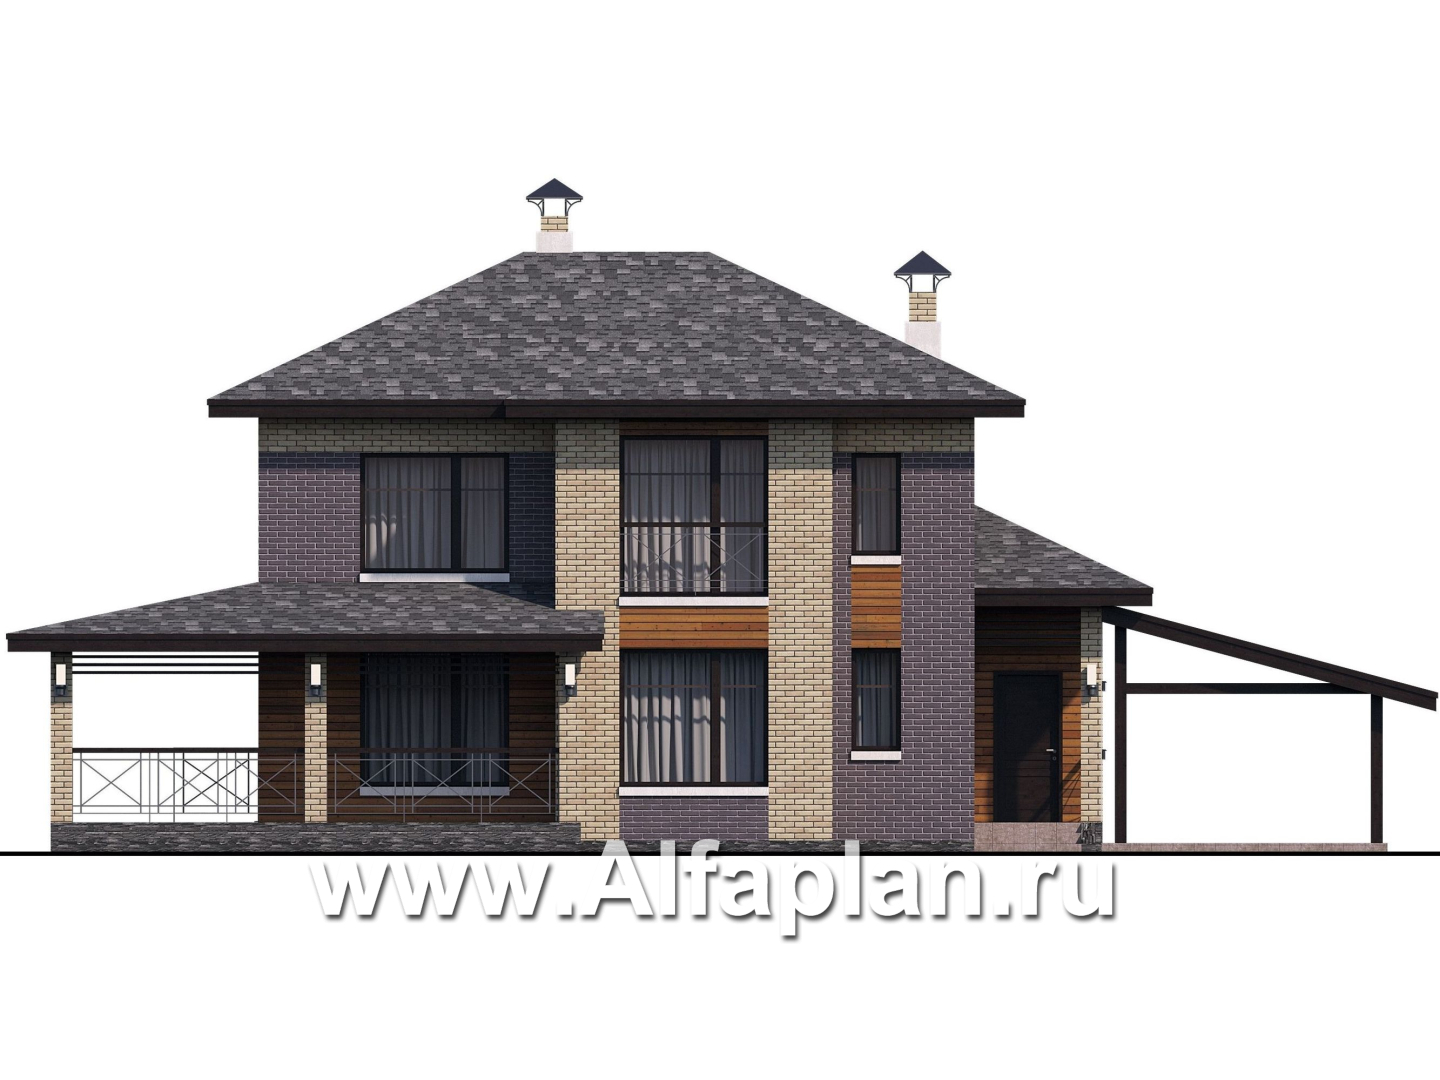 Проекты домов Альфаплан - «Стимул» - проект двухэтажного дома с угловой террасой, из кирпича, планировка с кабинетом на 1 эт, в современном стиле, с навесом на 1 авто - изображение фасада №1